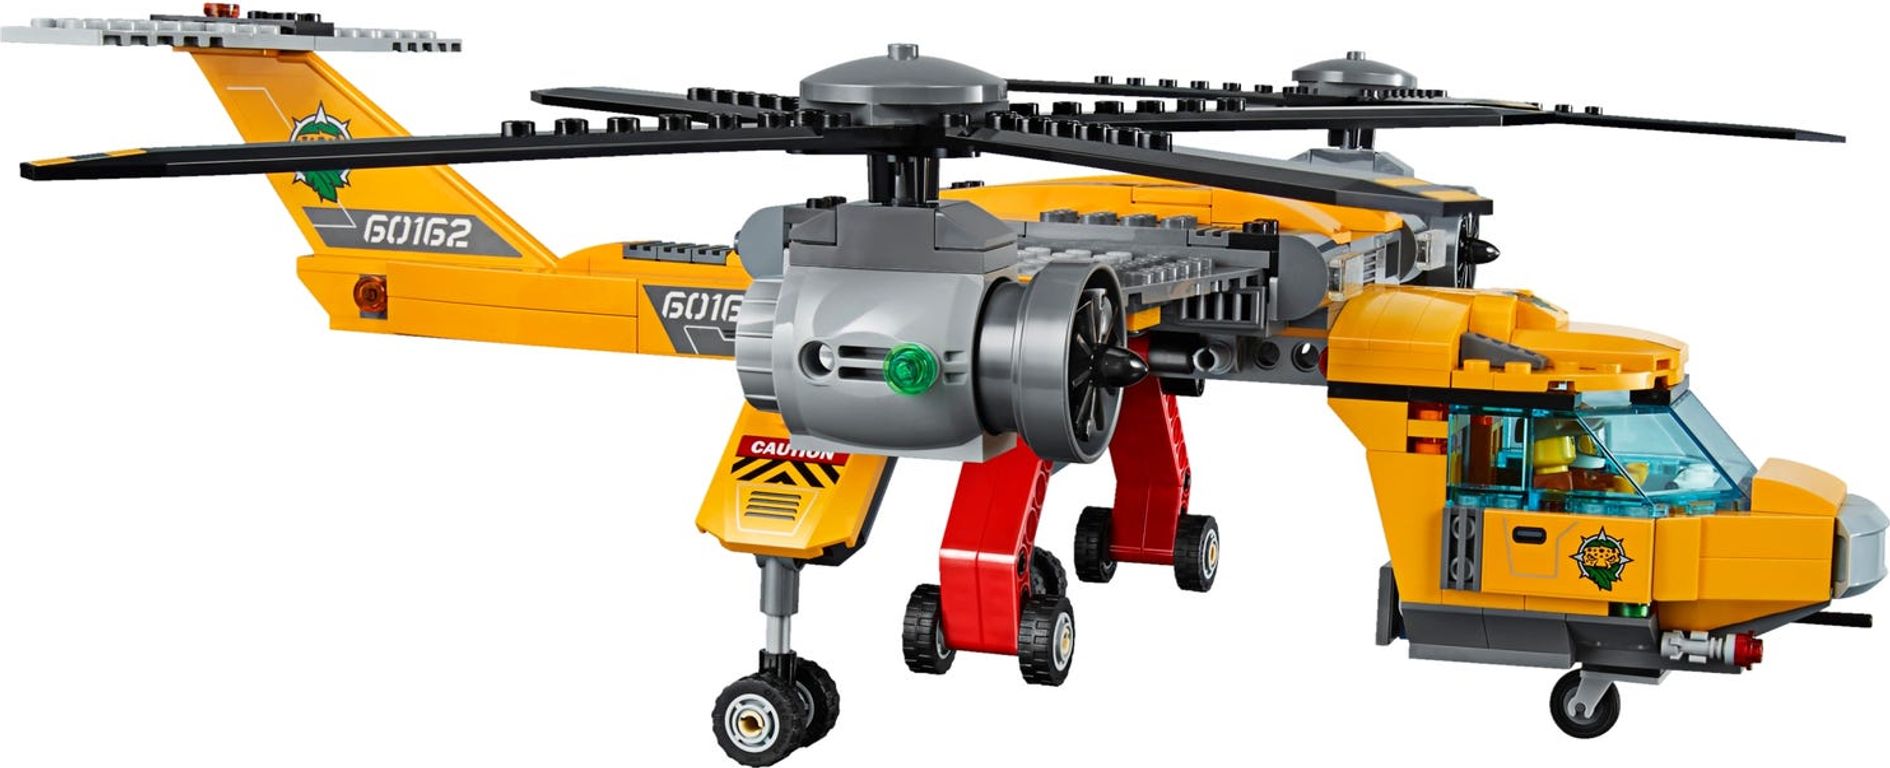 LEGO® City Jungla: Helicóptero de provisiones partes